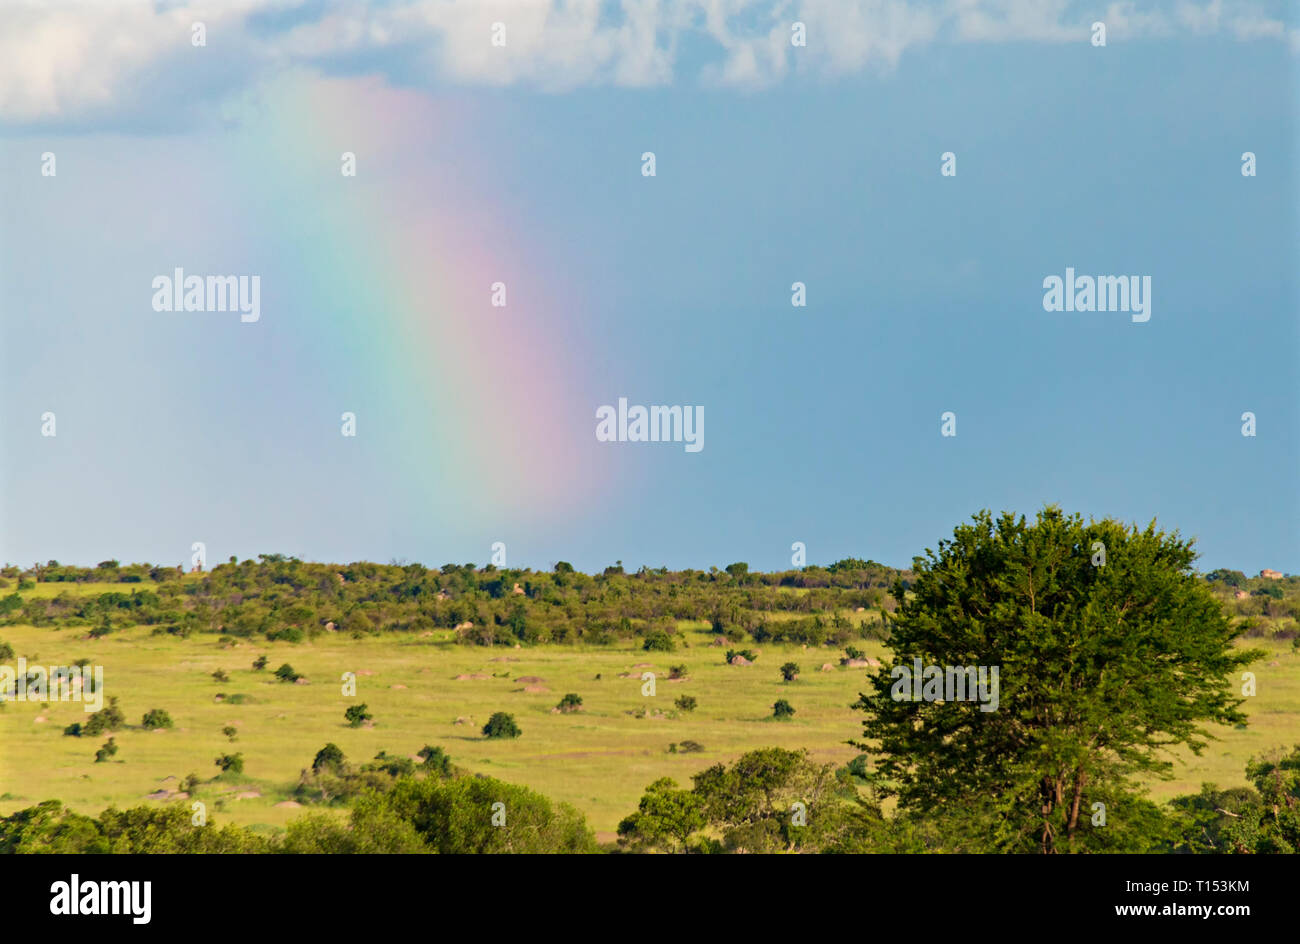 Rainbow Over The Savanna Stock Photo